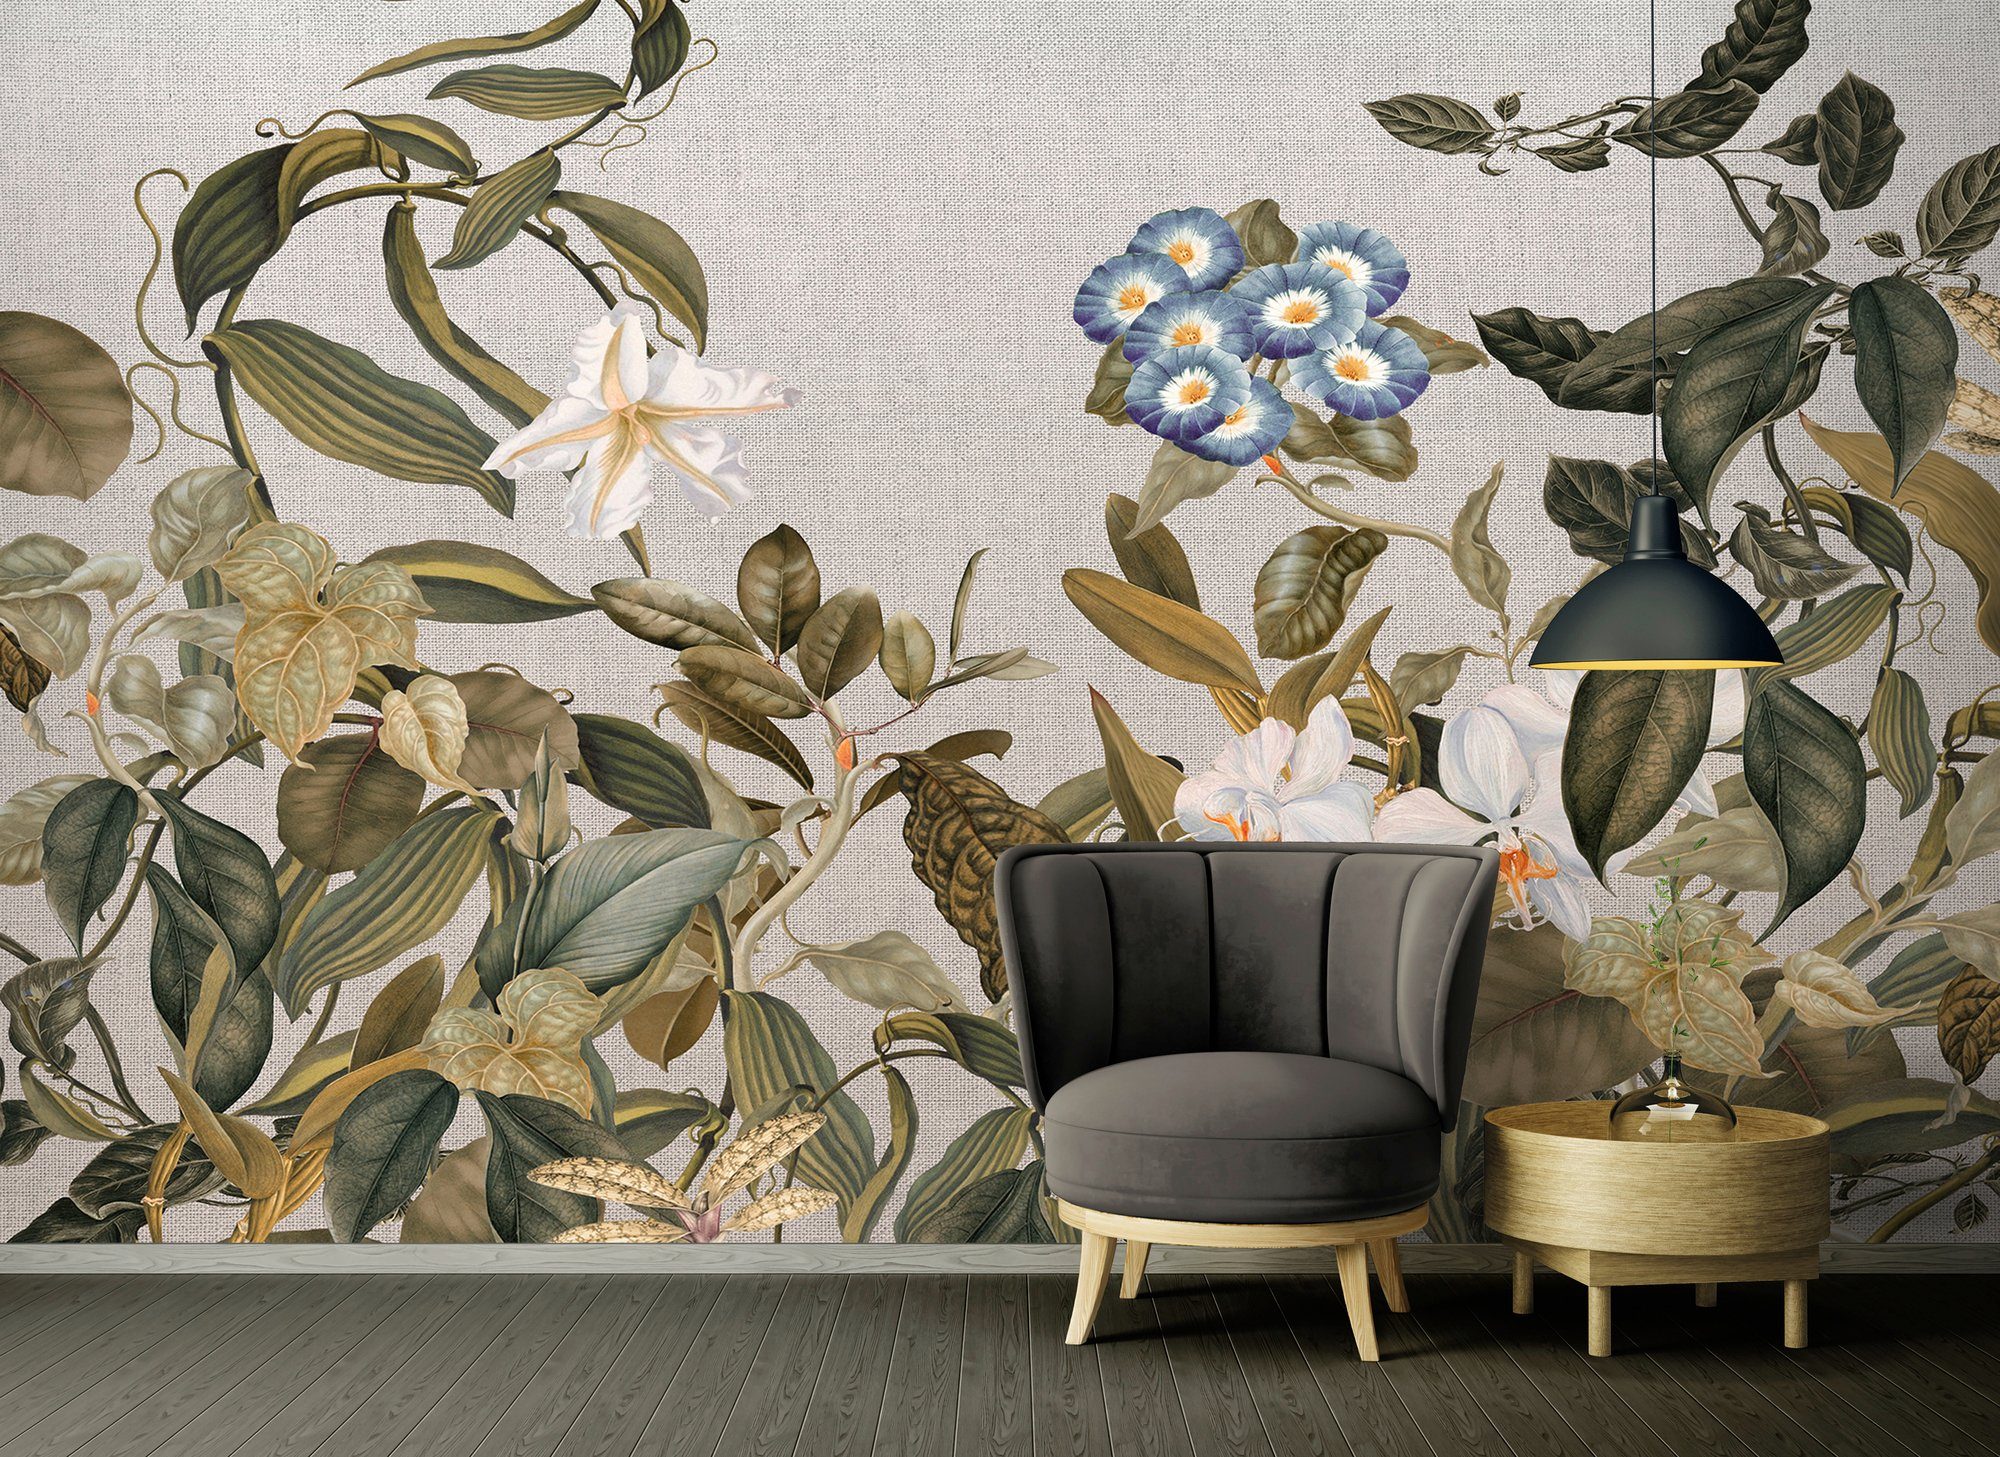 Atelier glatt, Architects blau/grün/weiß/grau Decke (4 Fototapete Botanic Wand, Paper Vlies, 47 St), Schräge, 1, Sketch floral,